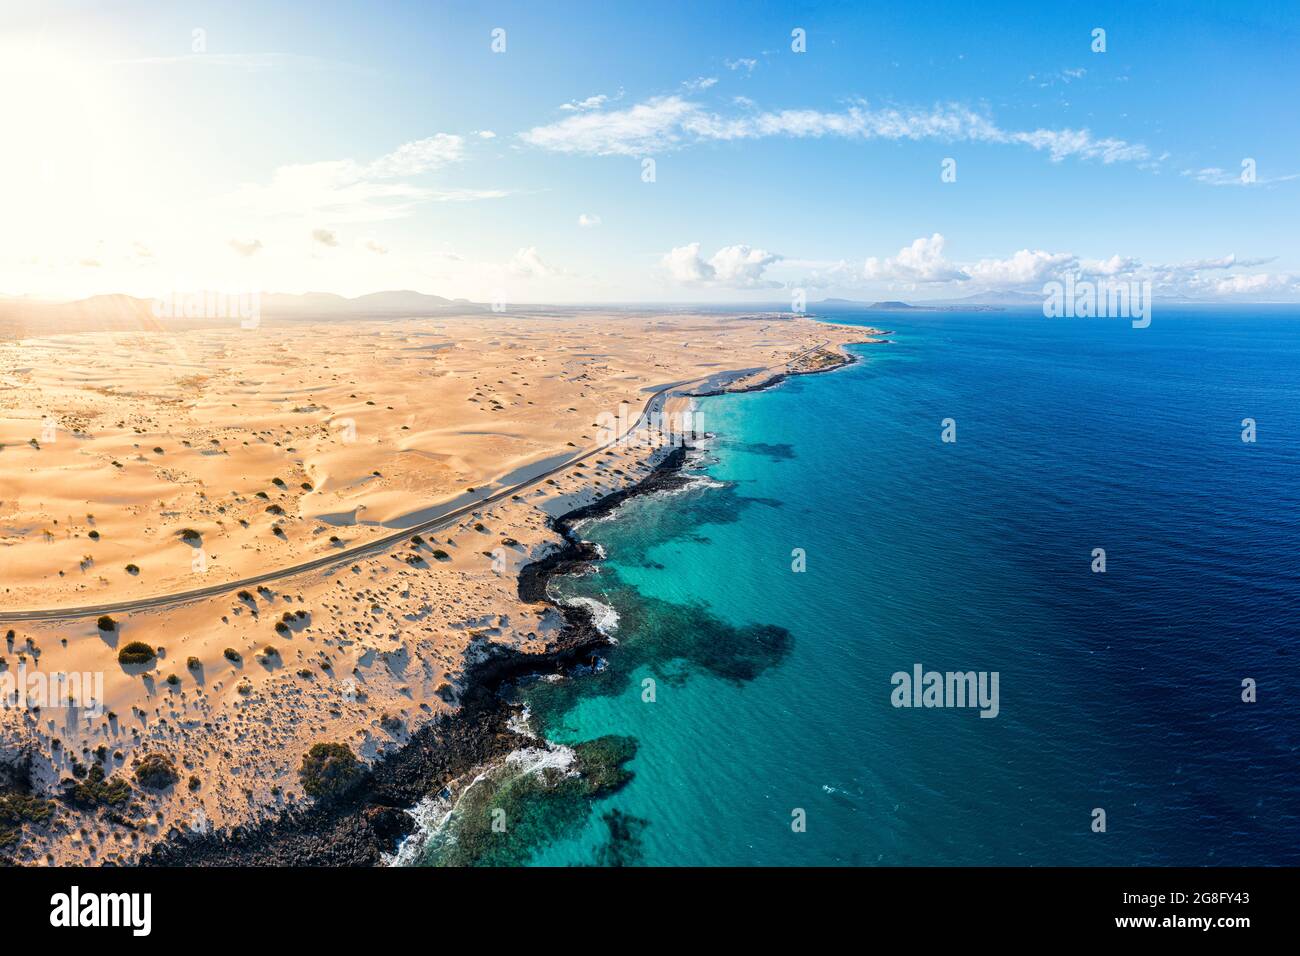 Vista aerea della strada vuota accanto al mare cristallino turchese e dune di sabbia, Corralejo, Fuerteventura, Isole Canarie, Spagna, Atlantico, Europa Foto Stock